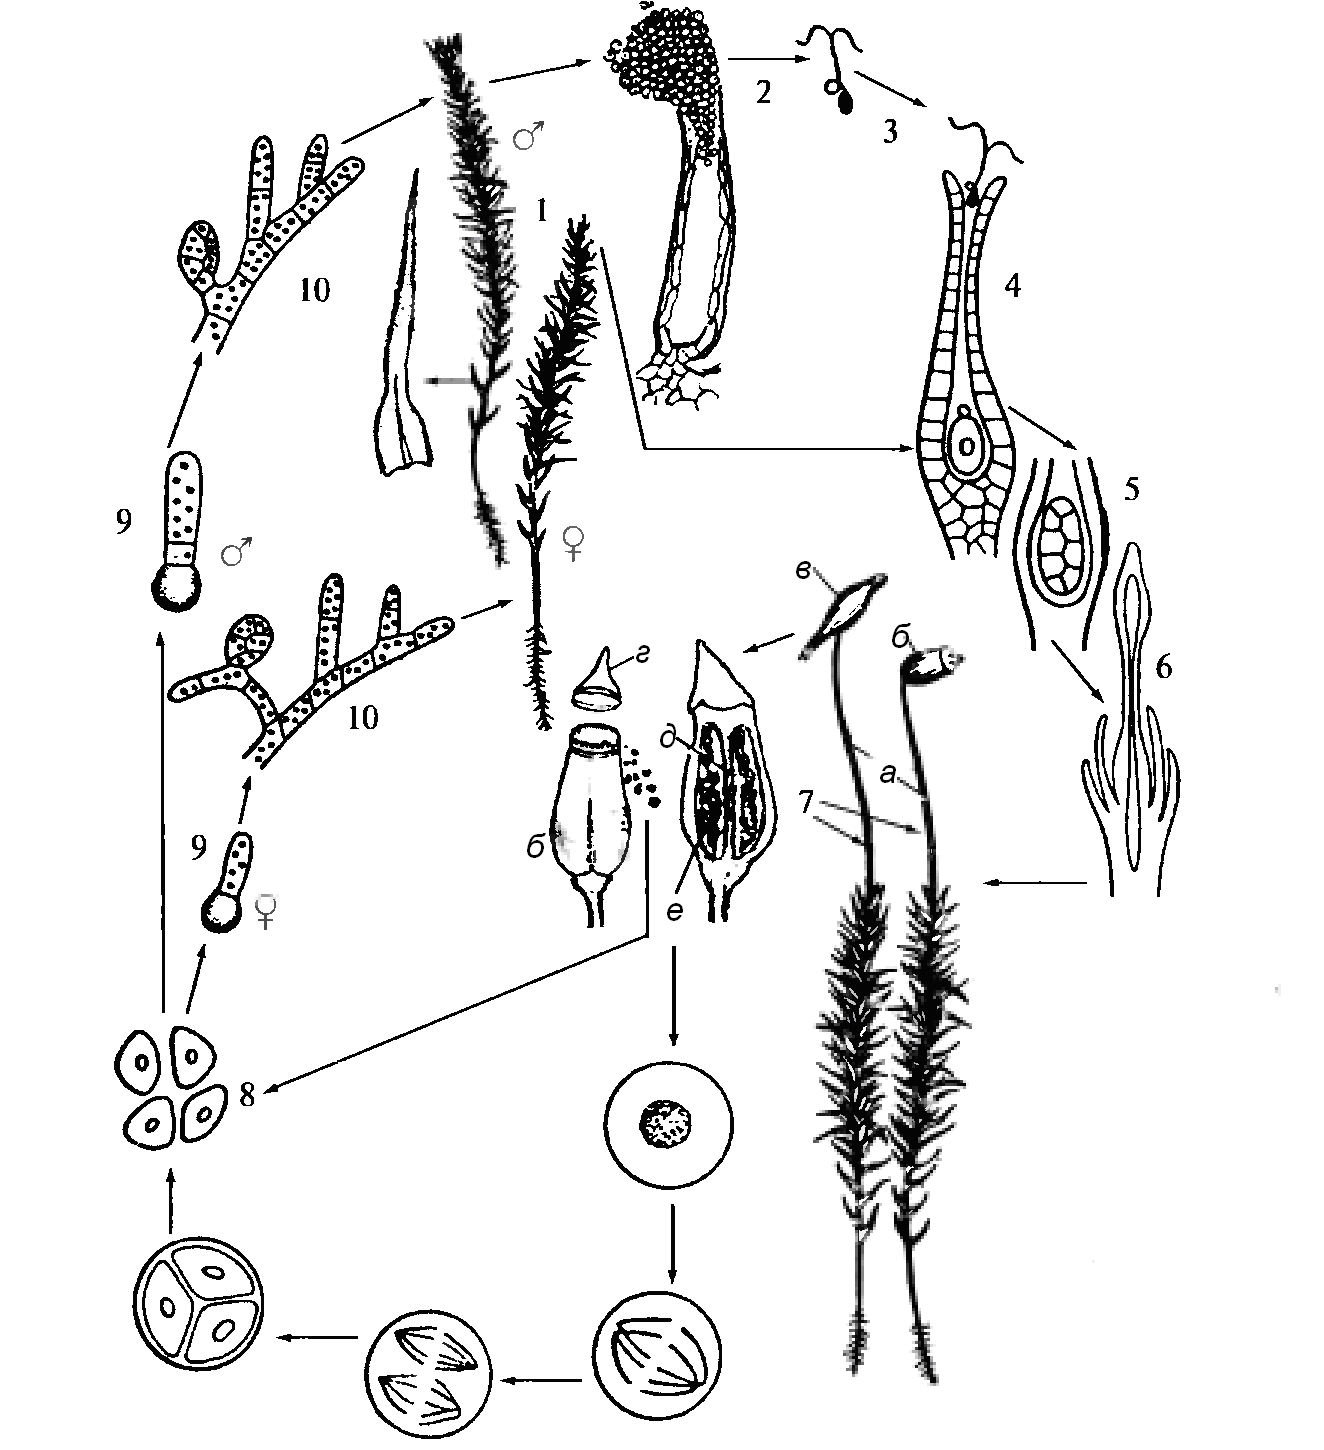 Жизненный цикл листостебельных мхов Кукушкин лен. Жизненный цикл мха Кукушкин лен схема. Жизненный цикл мха Кукушкина льна. Жизненный цикл развития мха Кукушкин лен. Зеленый мох кукушкин лен размножение